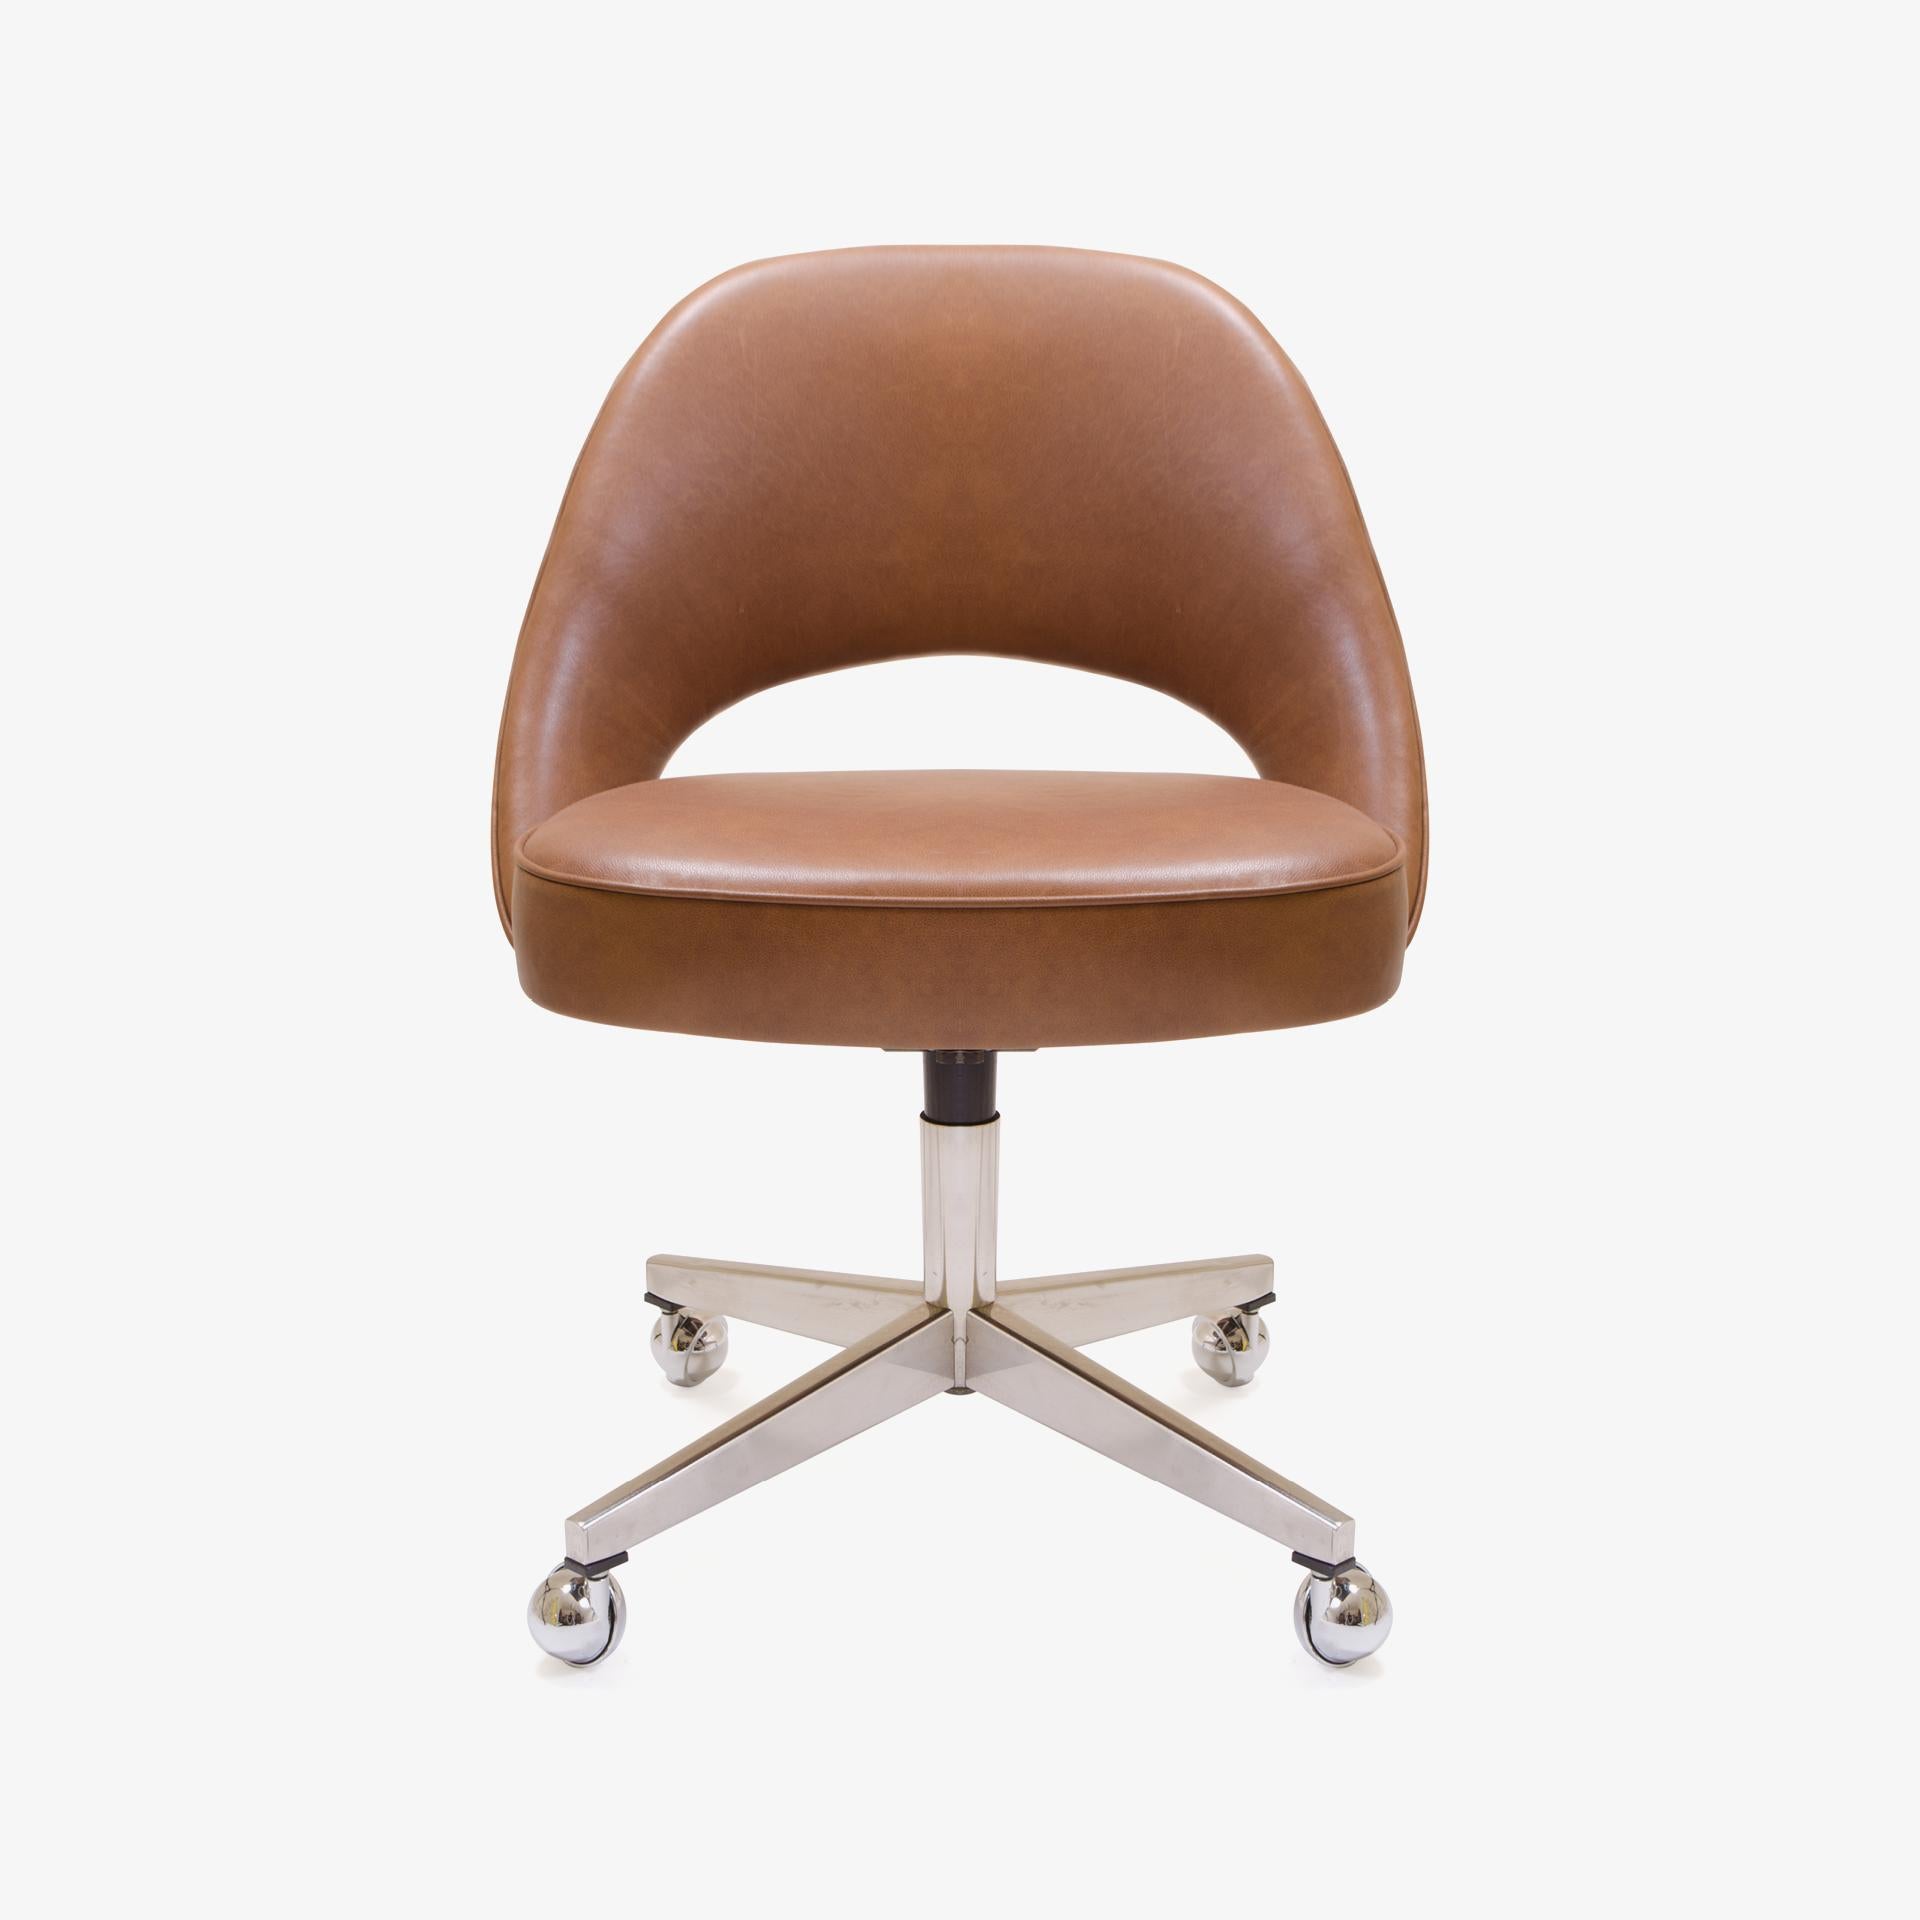 Montage restauriert seit Jahren Saarinen Executive Chairs in allen erdenklichen Stoffen, direkt in unserem eigenen Arbeitsraum. Wir haben diese Stühle mit einem geschmeidigen italienischen Sattelleder restauriert und die Wildlederseite der Haut für